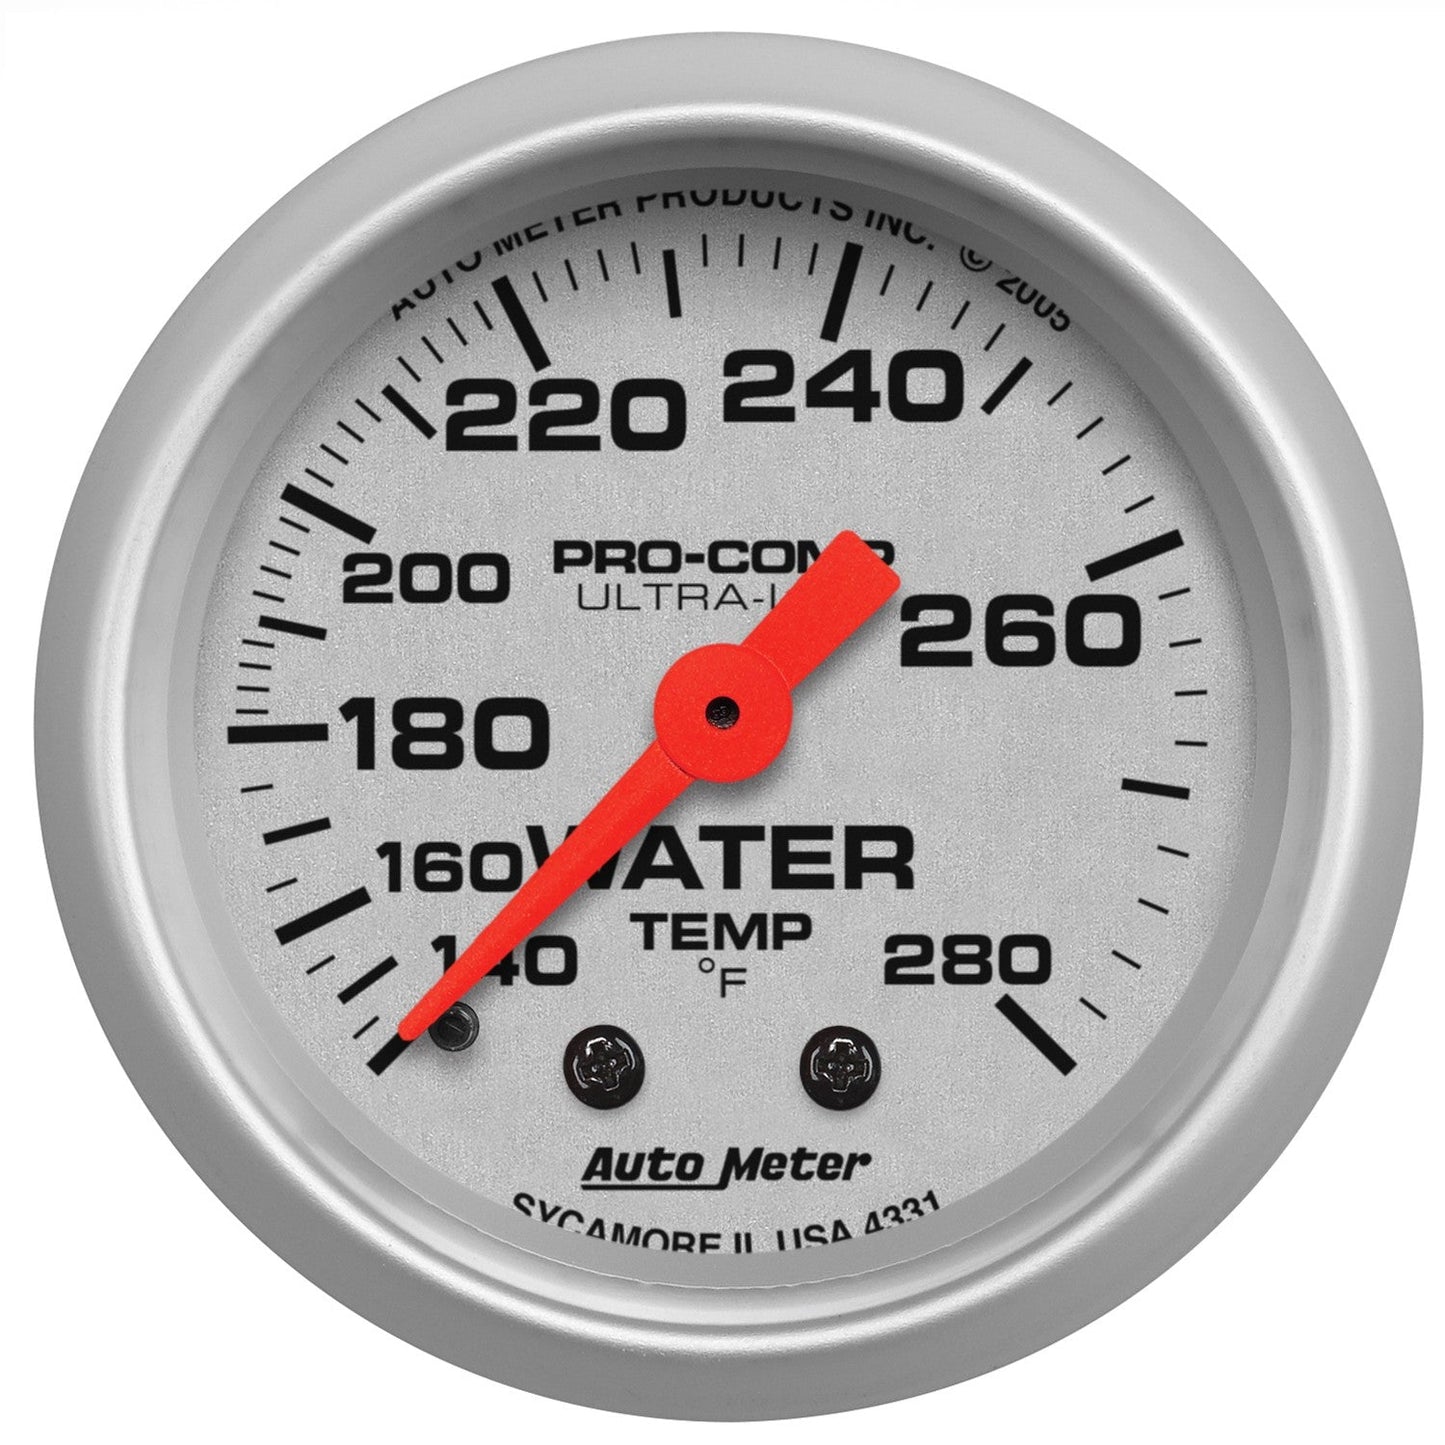 AutoMeter - 2-1/16" TEMPERATURA DA ÁGUA, 140-280 °F, MECÂNICO, ULTRA-LITE (4331)